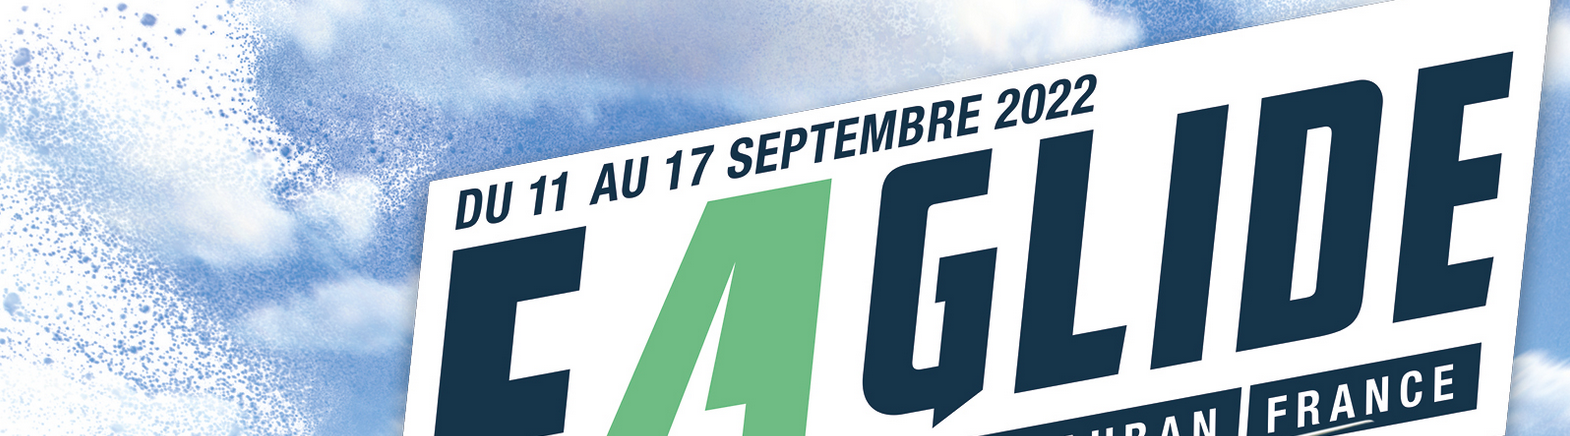 E4glide - Saint Auban - September 2022